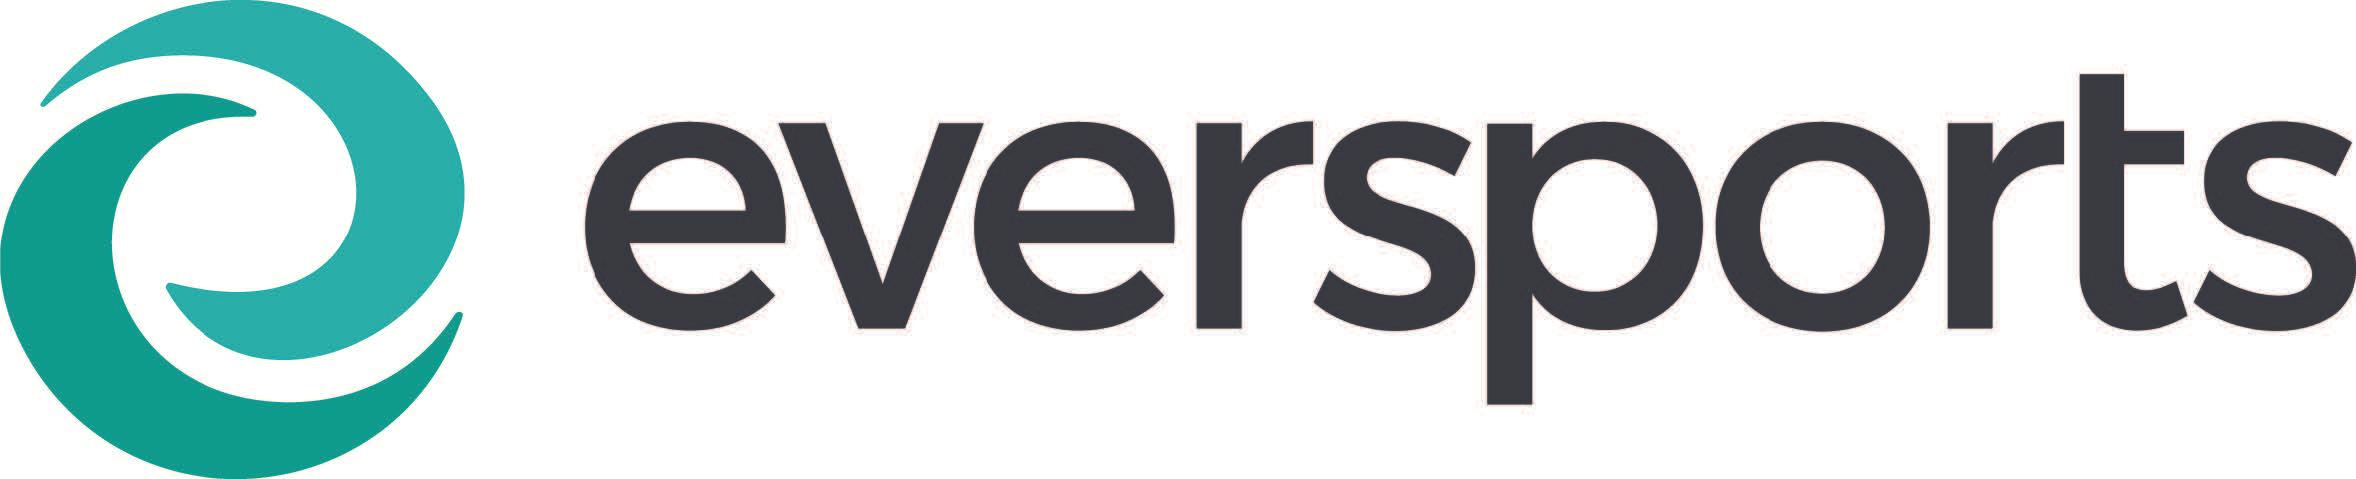 eversports-logo